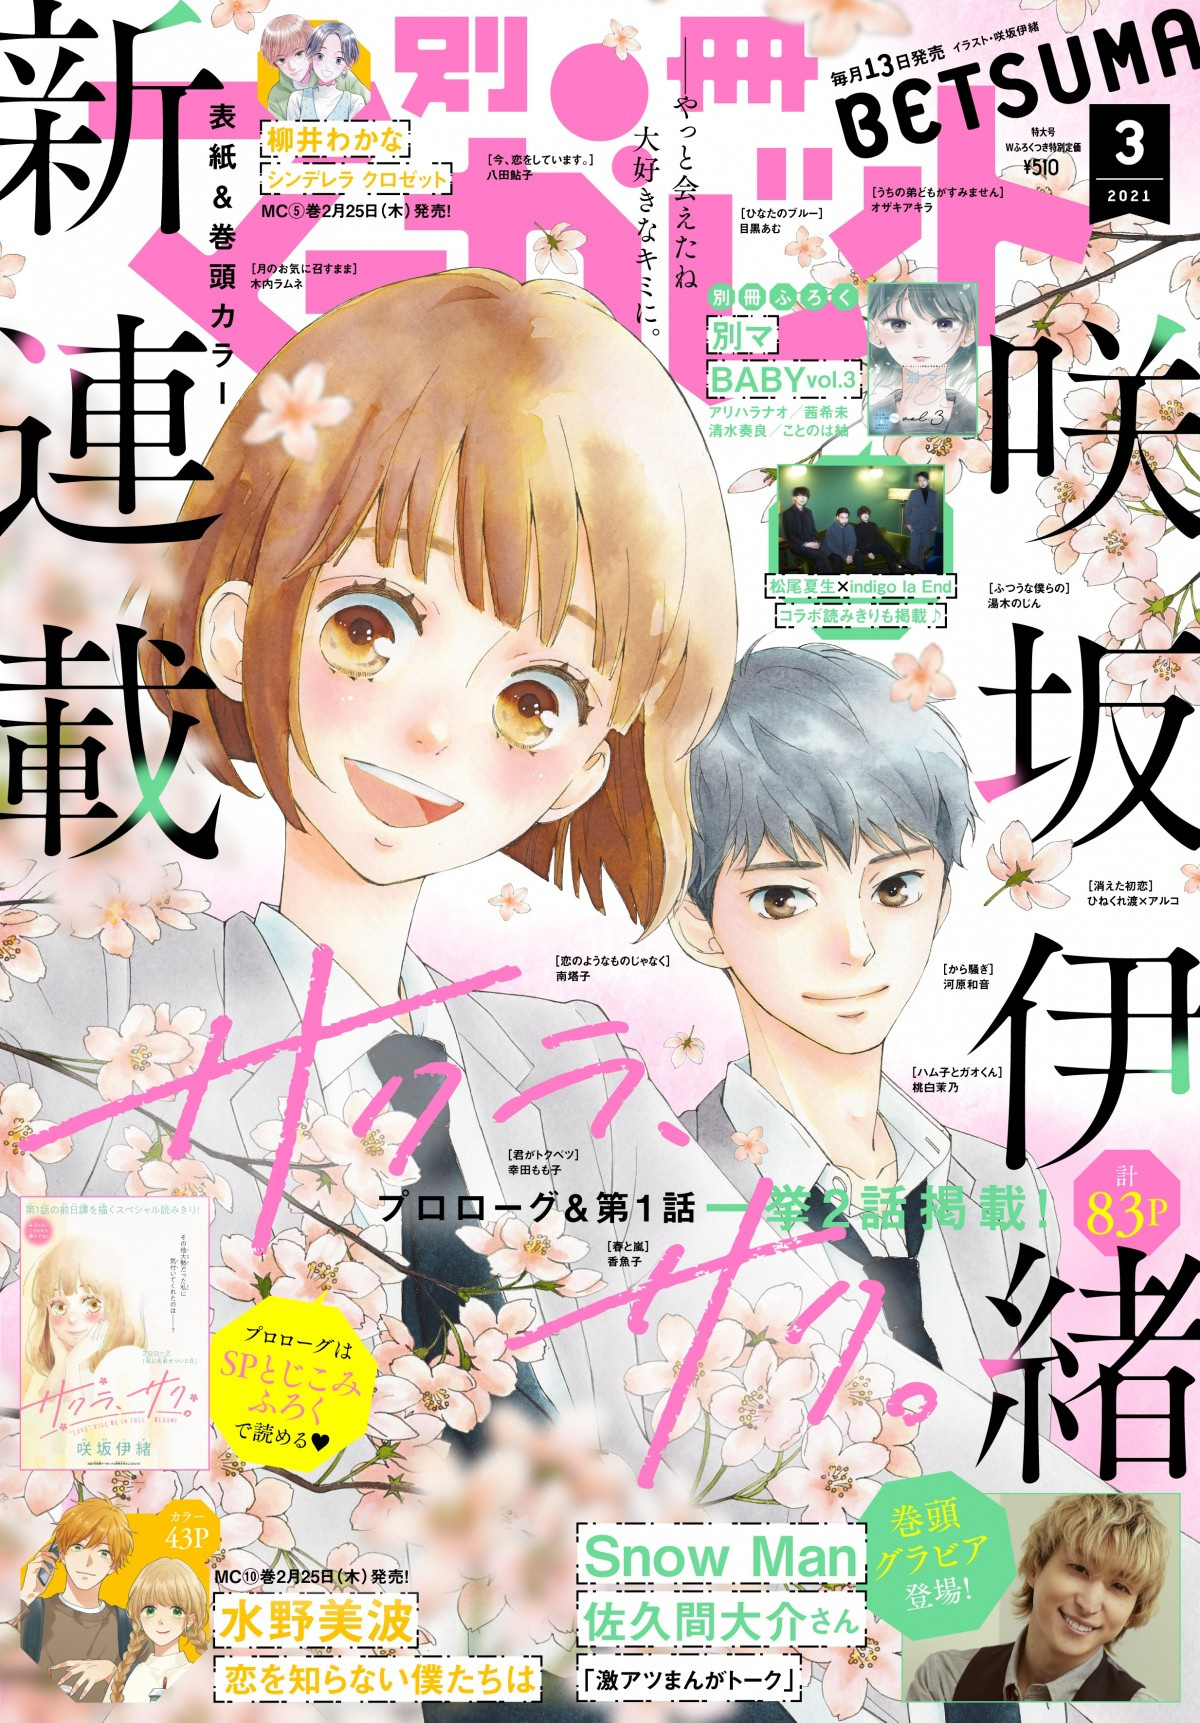 咲坂伊緒氏の新連載 サクラ サク 開始 王道少女漫画とは 問いの答え ここにあります Oricon News